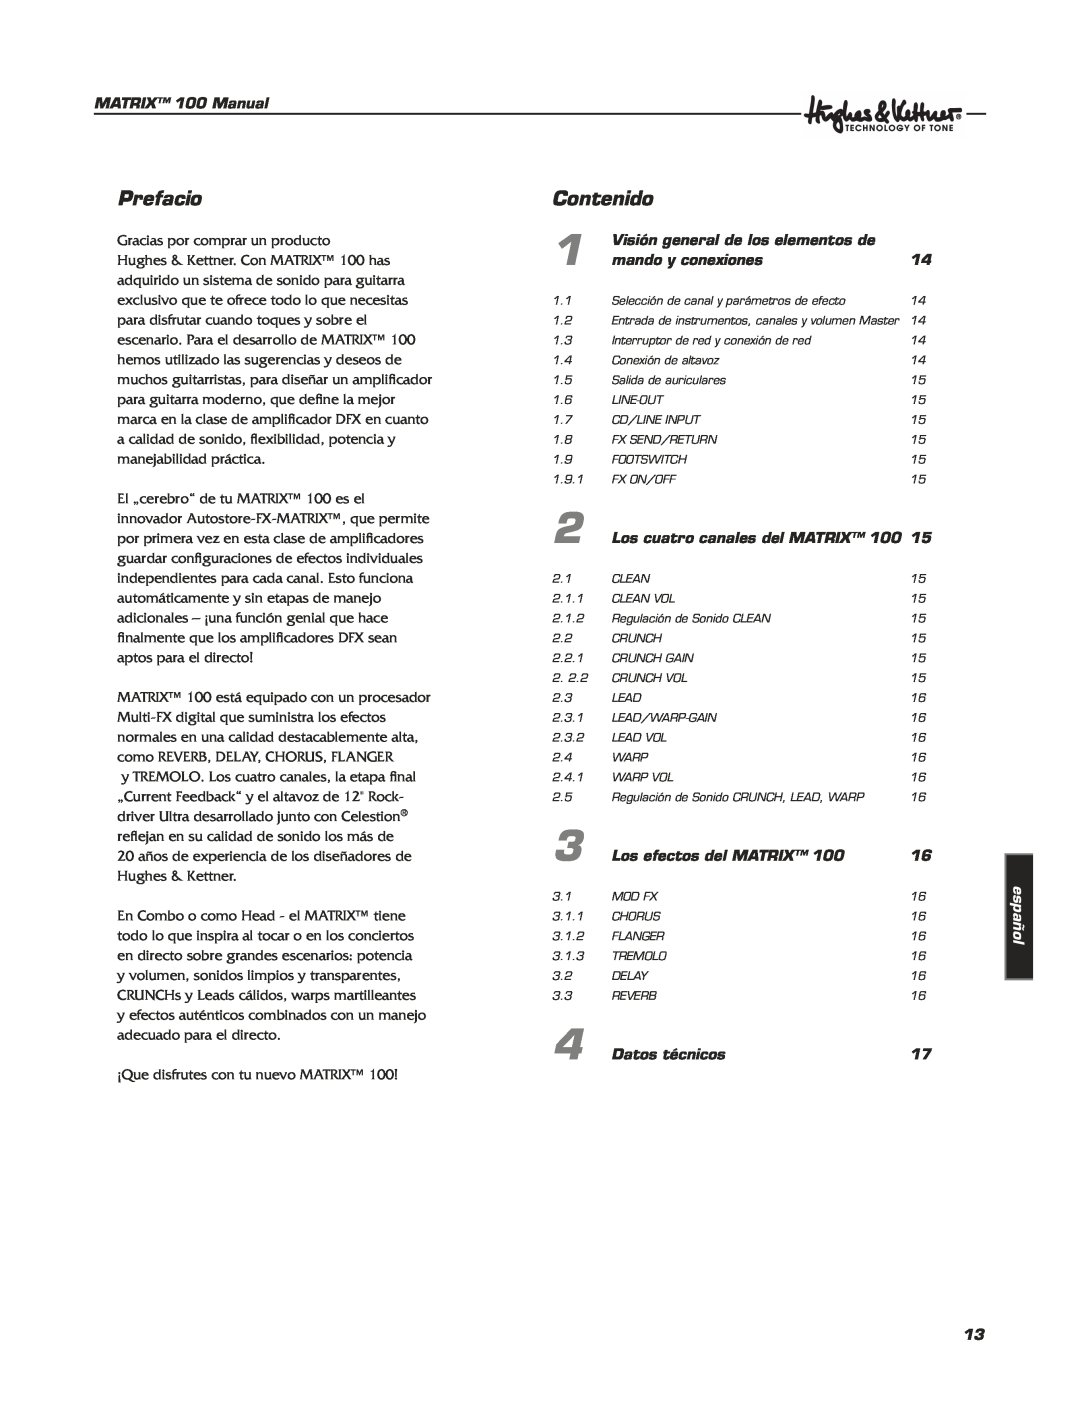 Hughes & Kettner Matrix 100 manual Prefacio, Contenido, español 